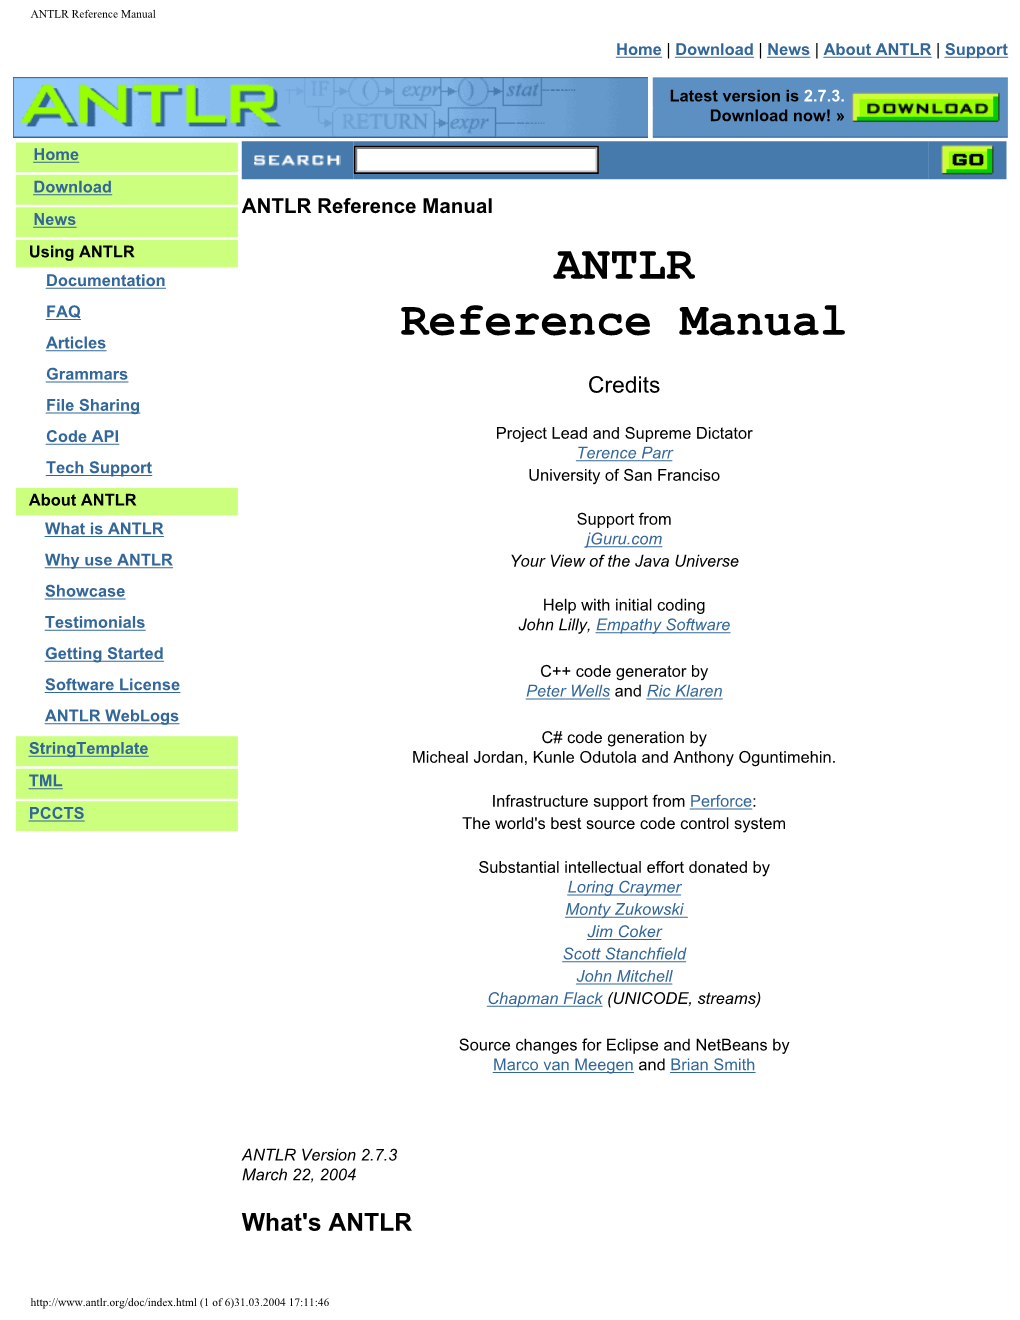 ANTLR Reference PDF Manual